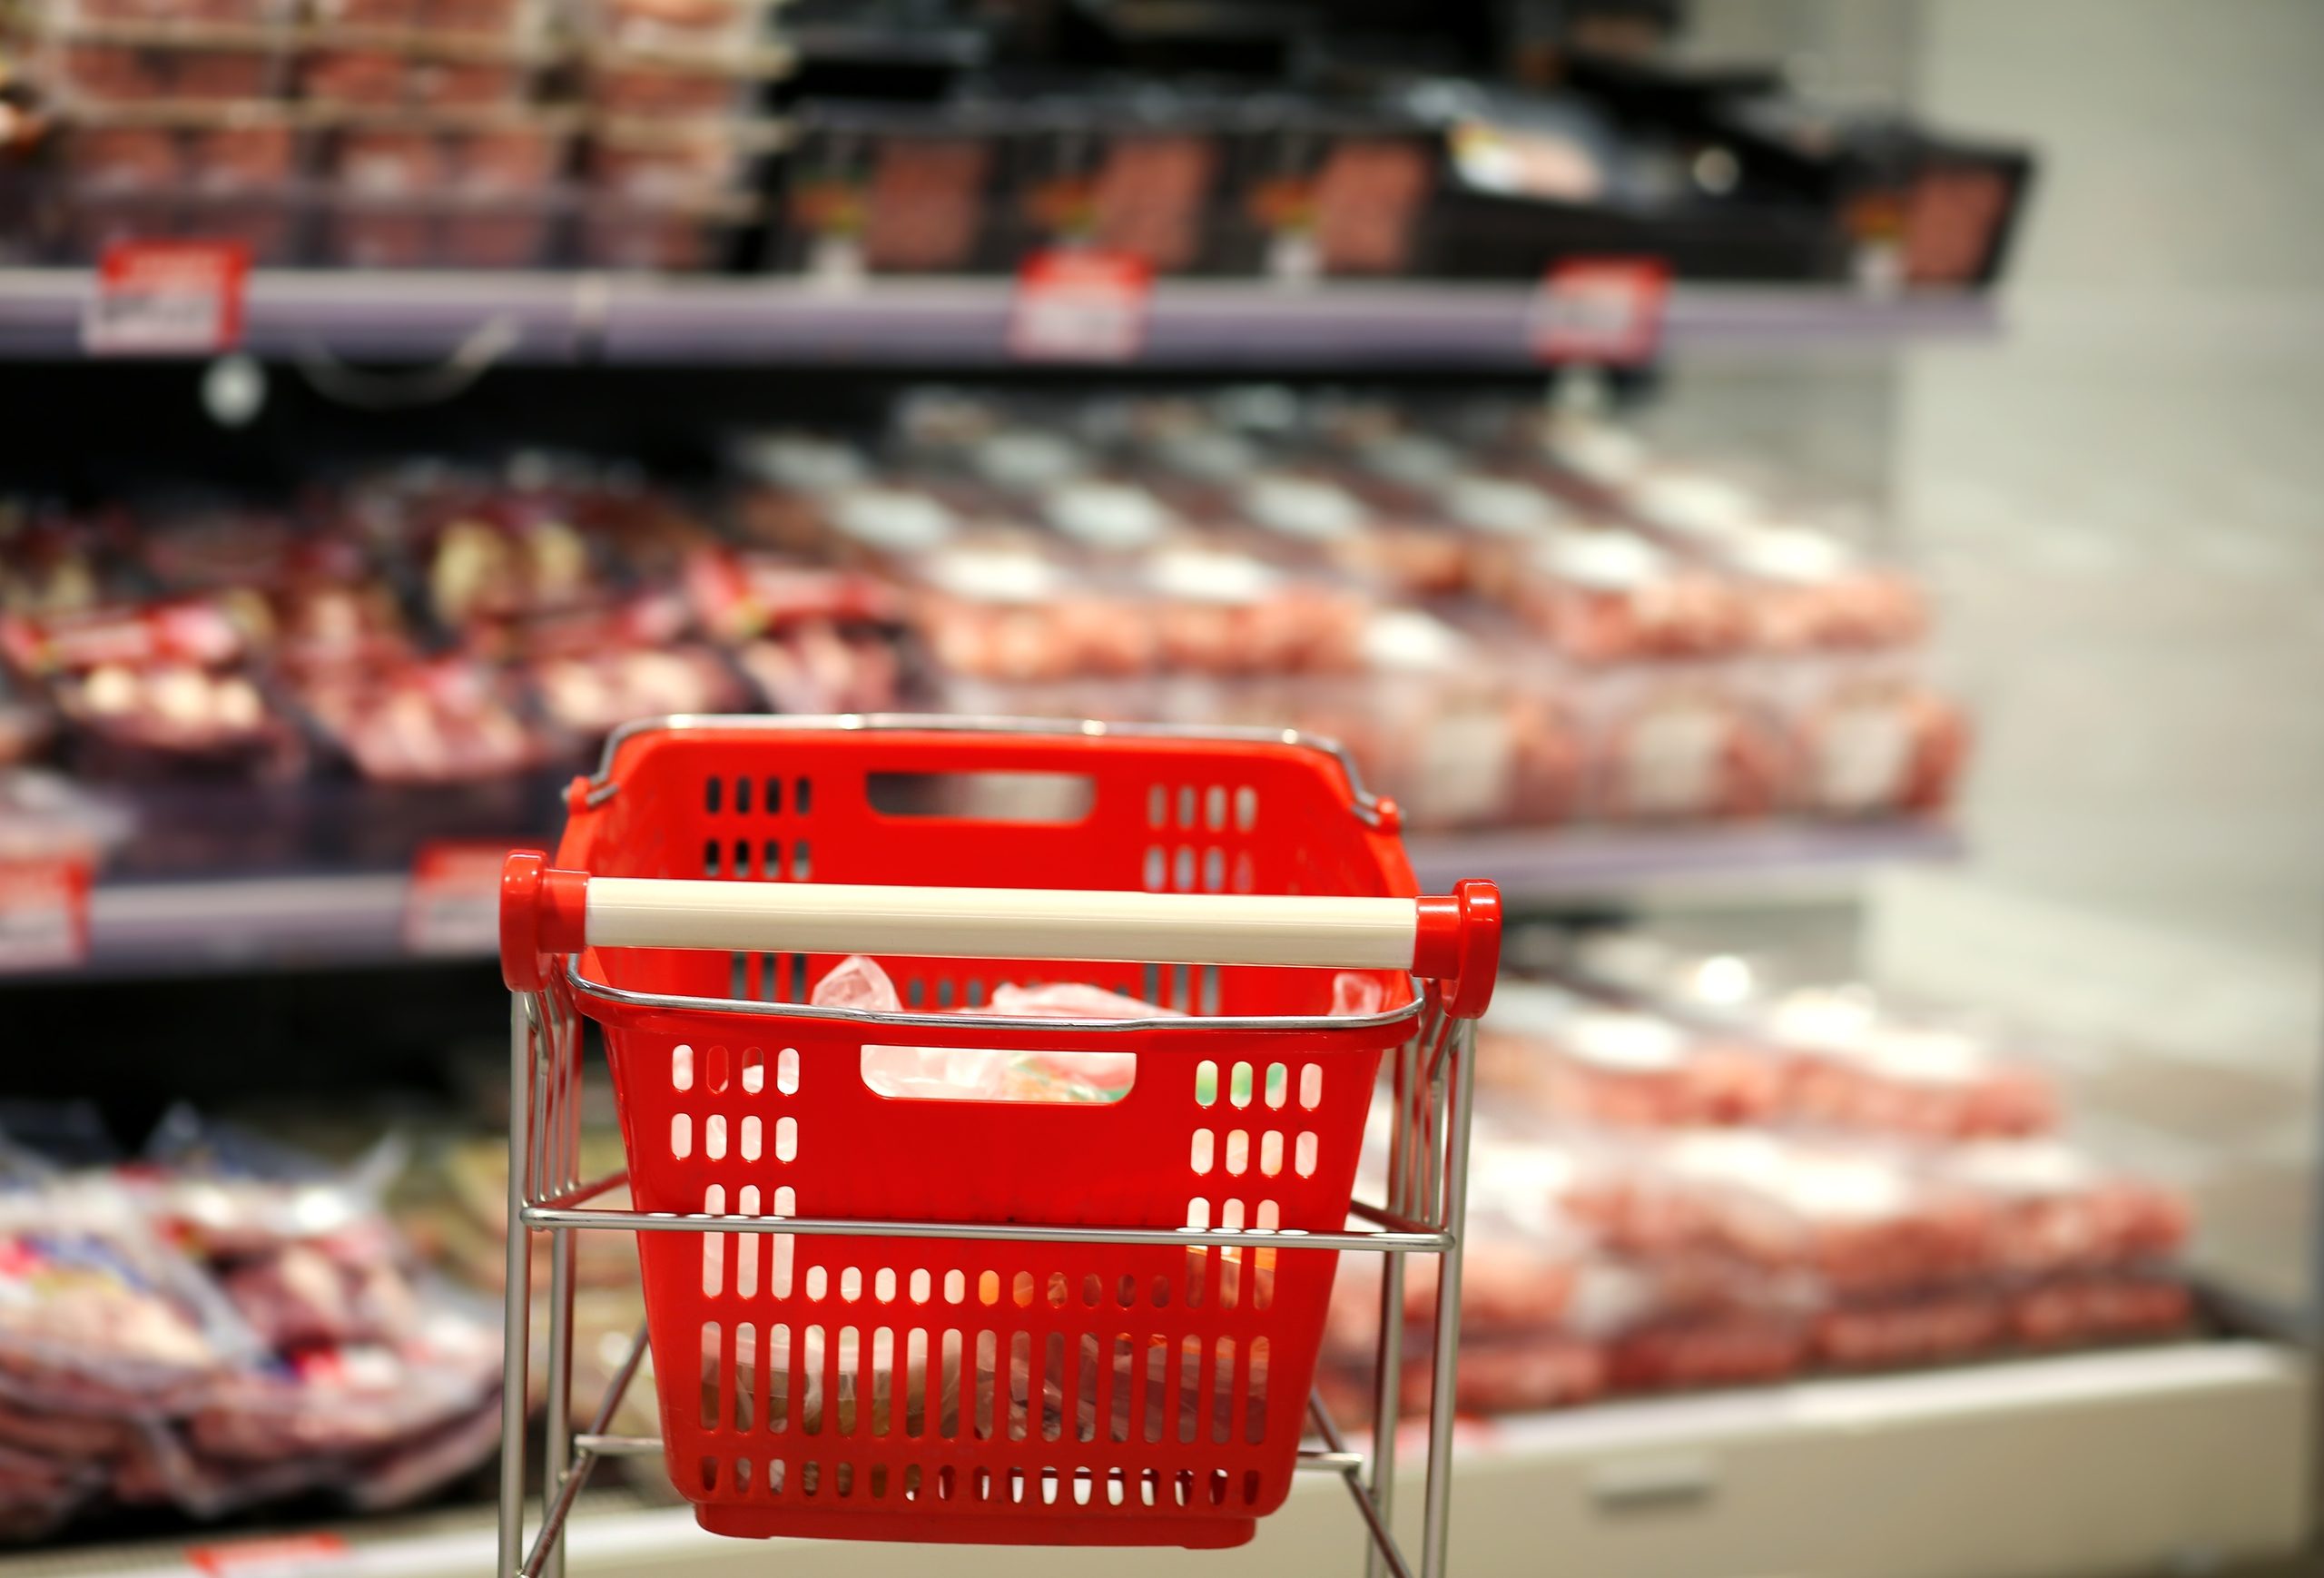 Das Bild zeigt einen Einkaufswagen vor einem Fleischregal im Supermarkt.